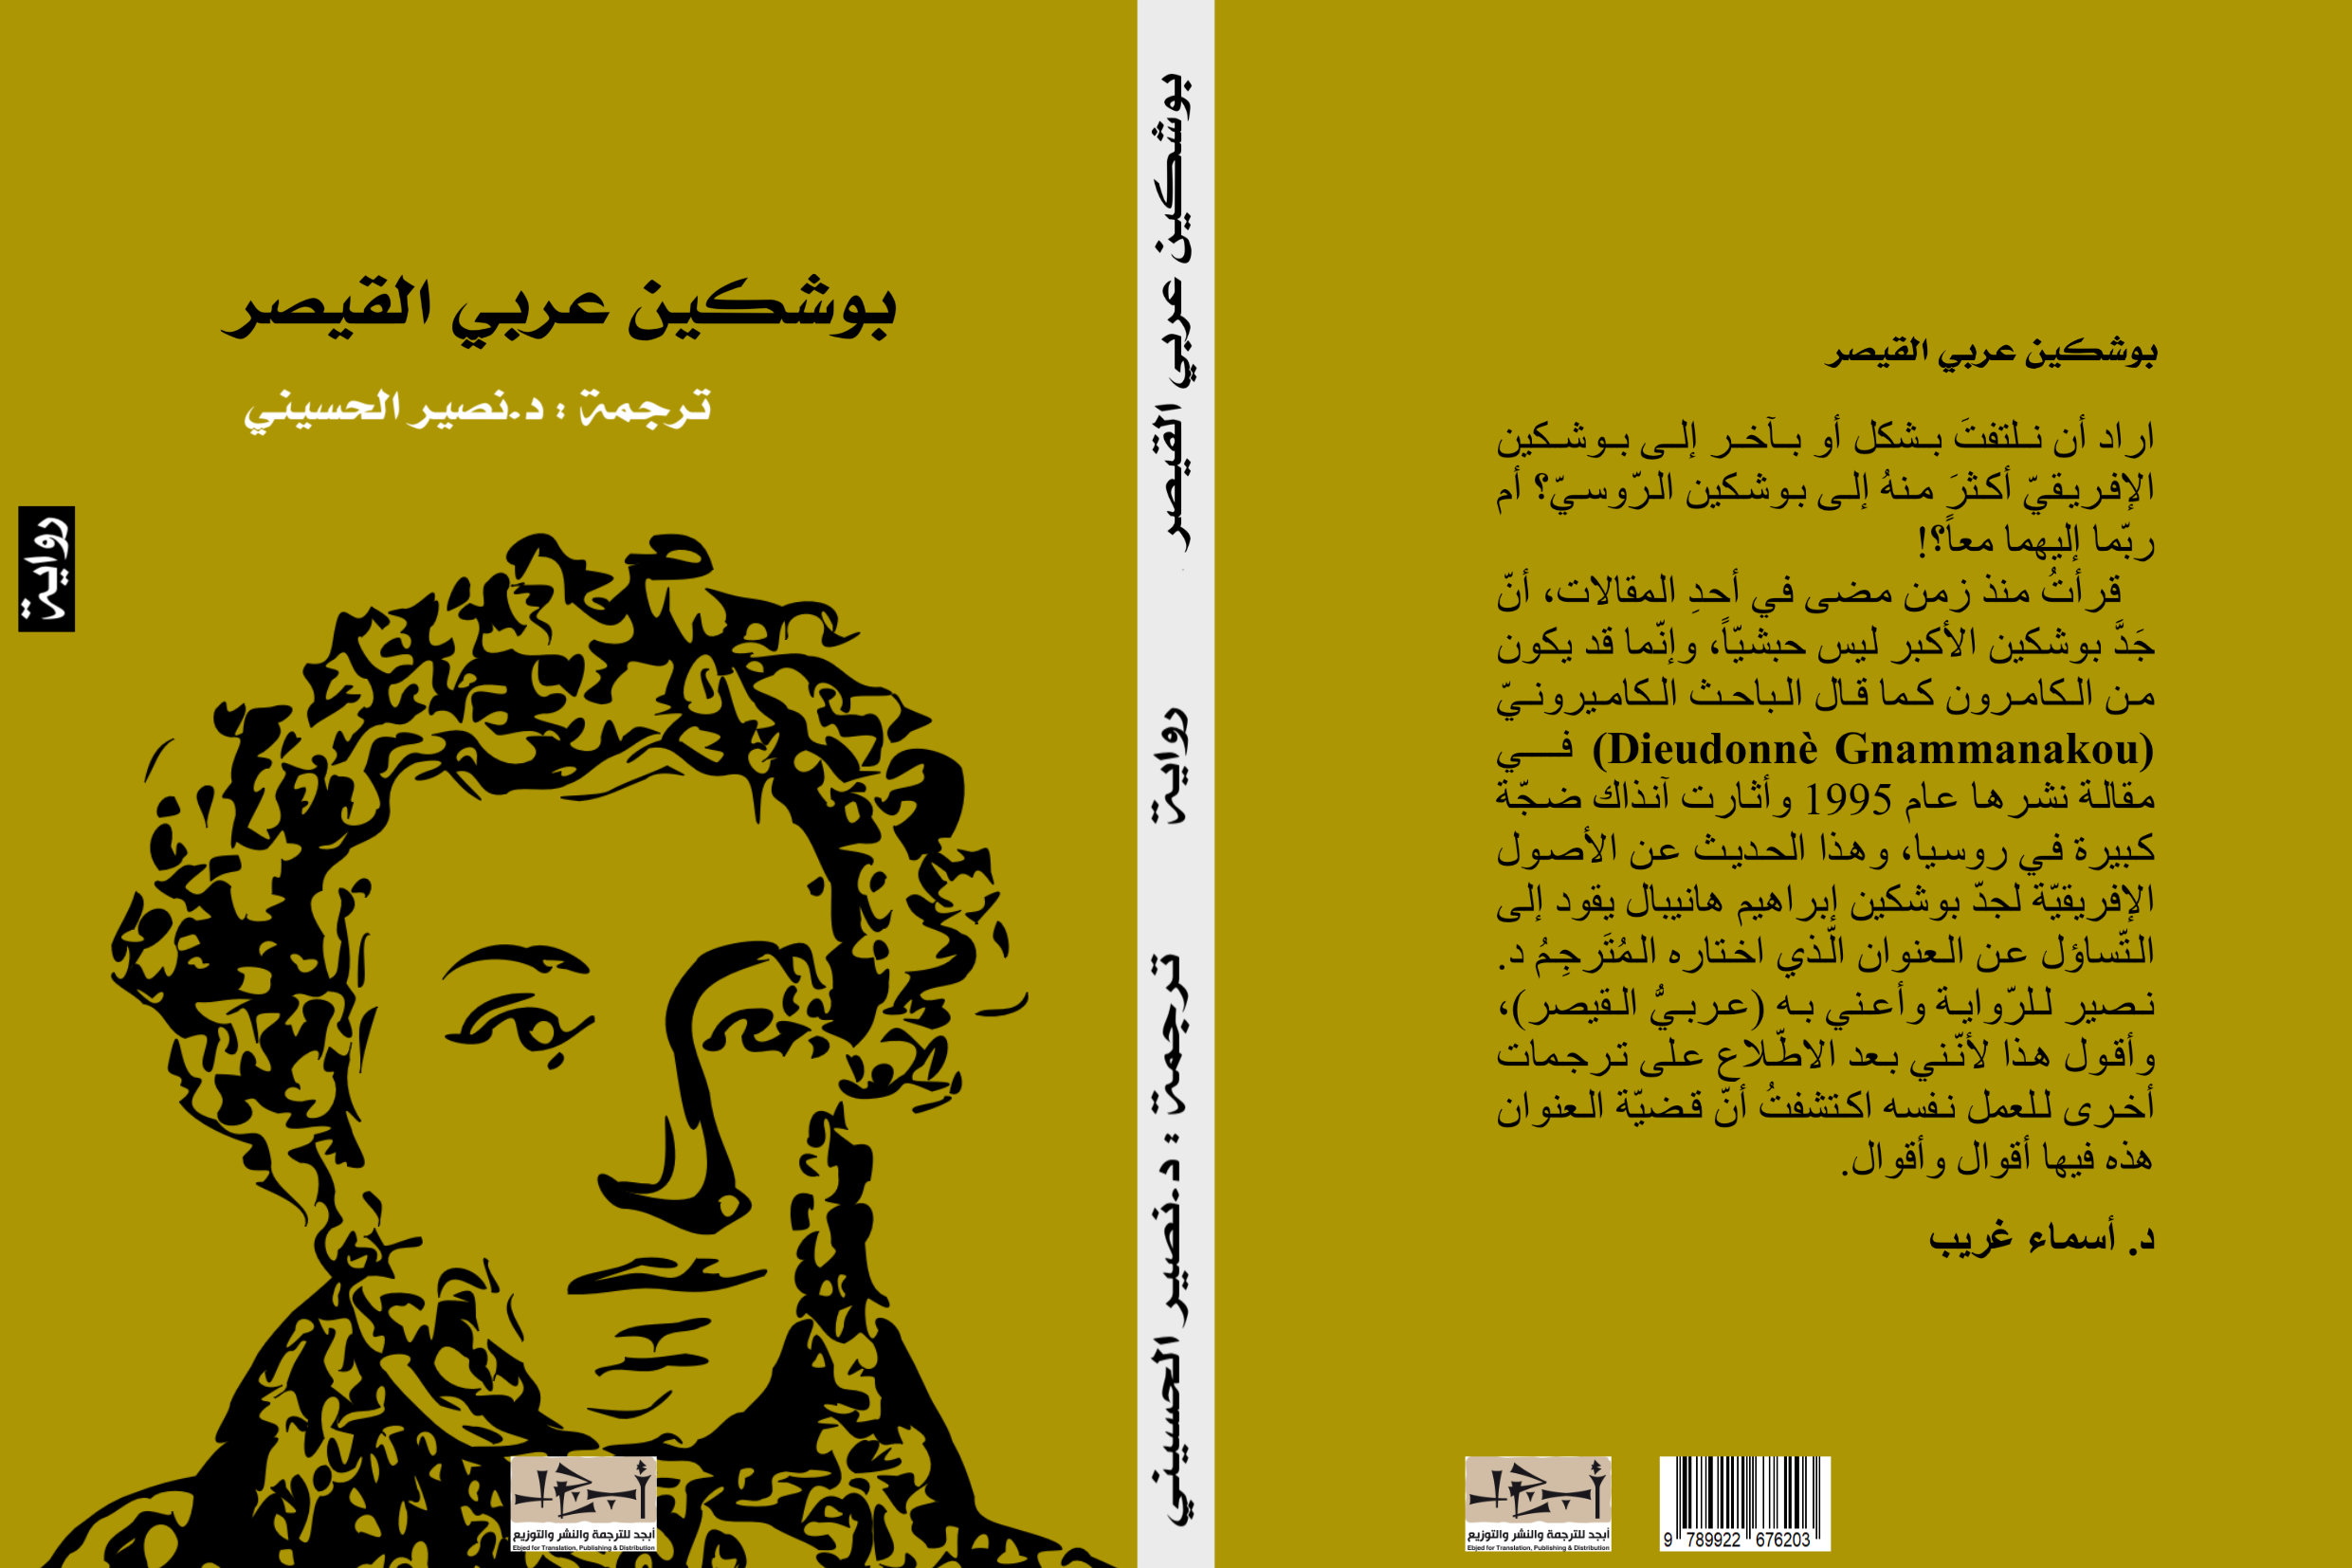 اسم الكتاب: بوشكين عربي القيصر ترجمة: د. نصير الحسيني 